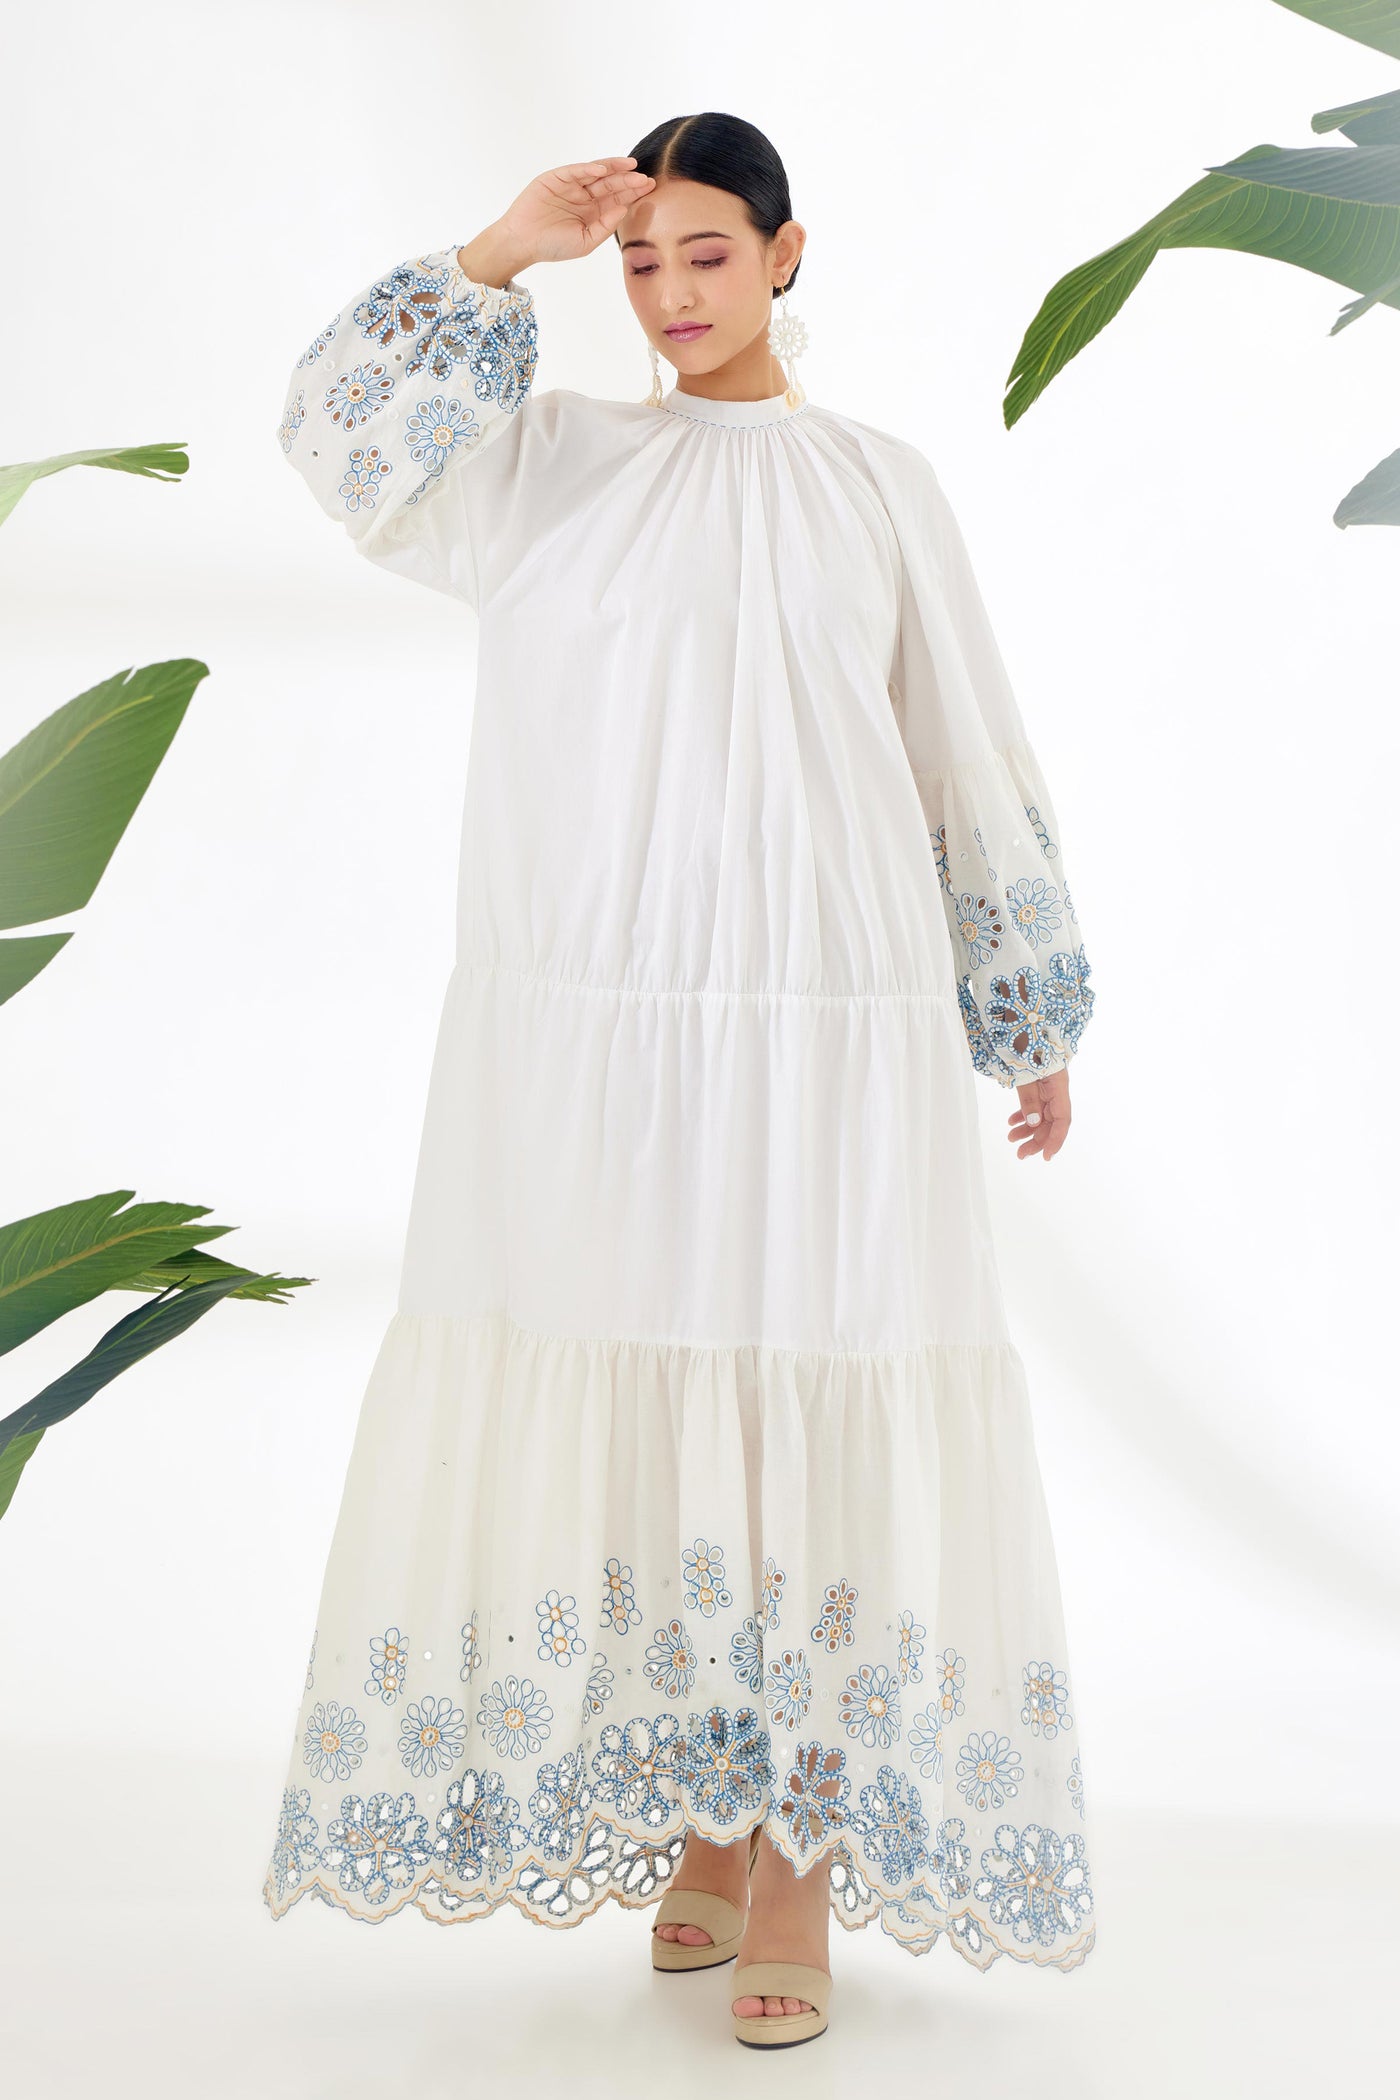 Nikasha Ivory Hand Embroidered Mirror Work Schiffli Tier Dress Top Indian designer wear online shopping melange singapore